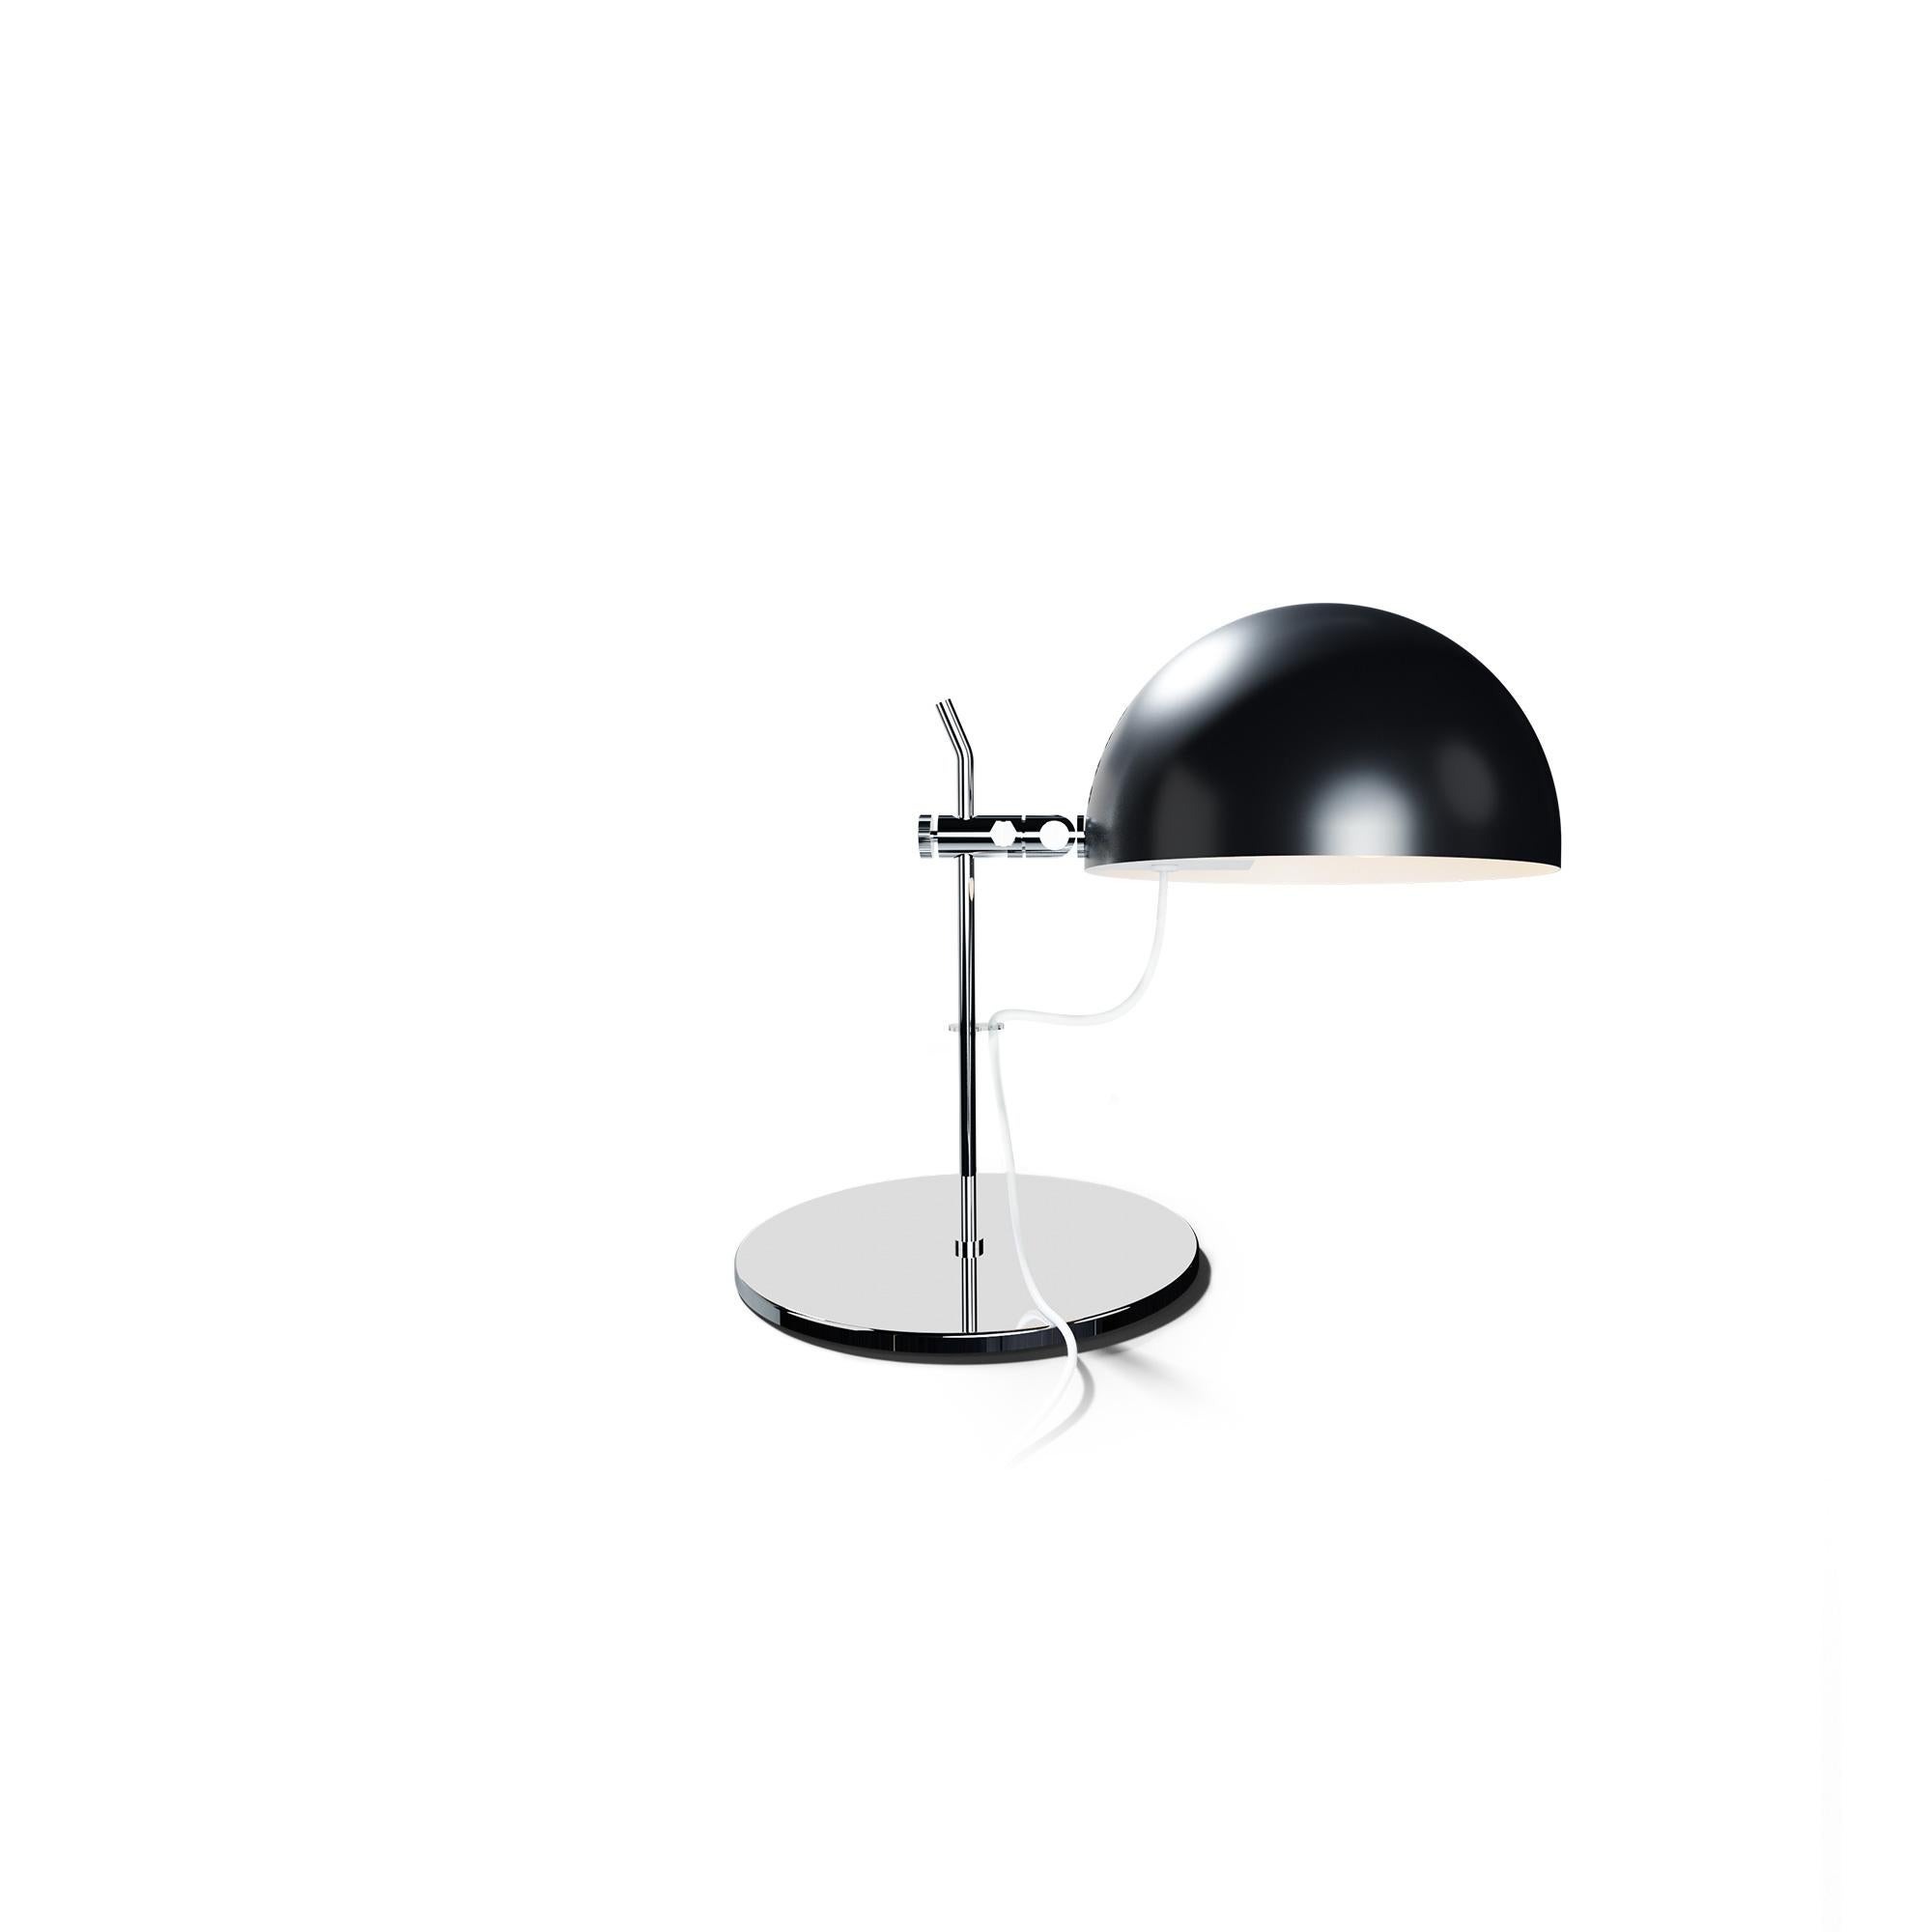 Alain Richard 'A22' Desk Lamp in Orange for Disderot For Sale 3